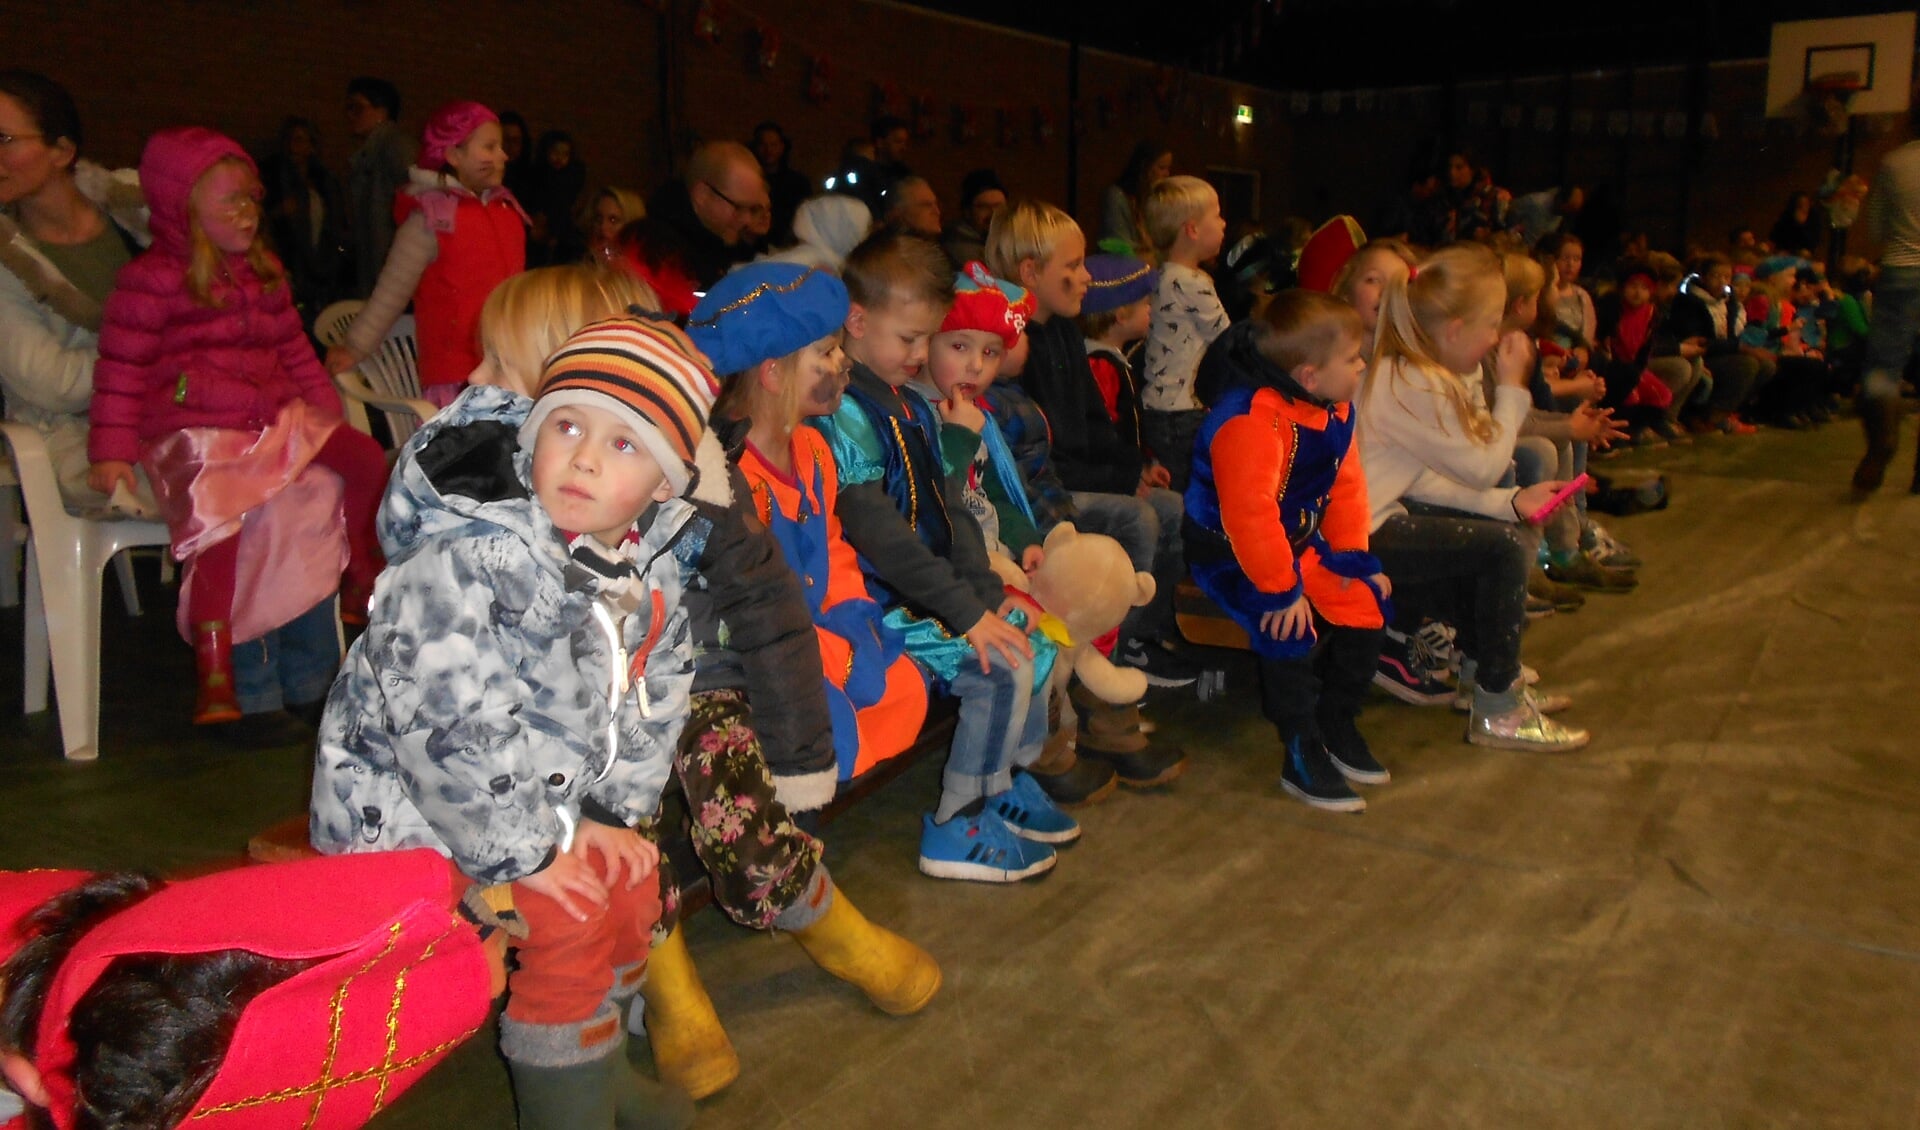 De kinderen wachten in spanning de komst van Sinterklaas af.